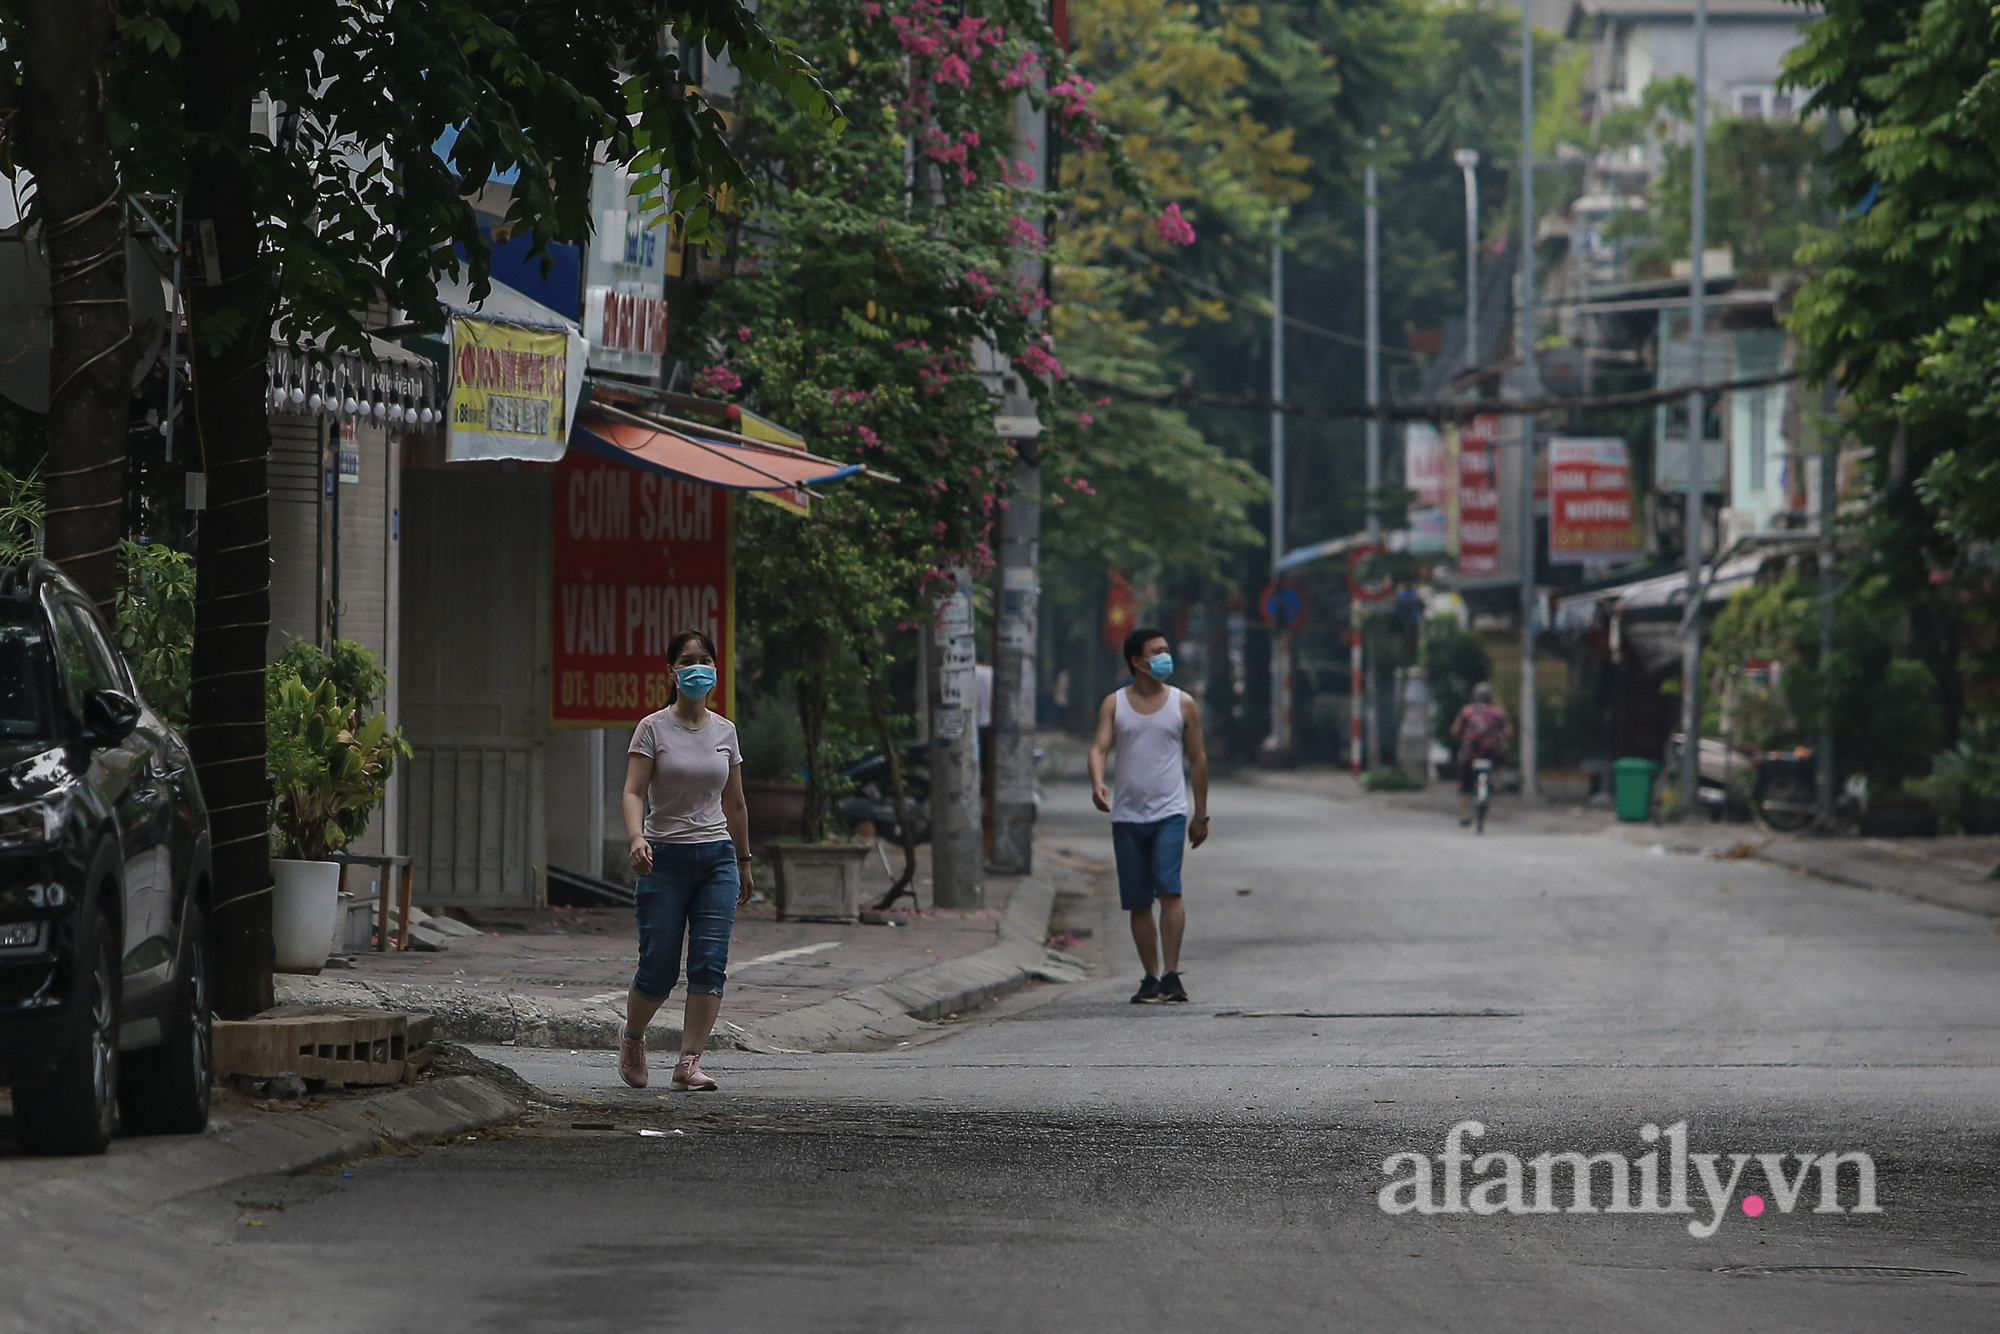 Hà Nội ngày thứ 17 giãn cách xã hội, nhiều người dân vẫn ra đường tập thể dục buổi sáng, có người treo quả bí đỏ trước xe để đạp xe đạp - Ảnh 4.